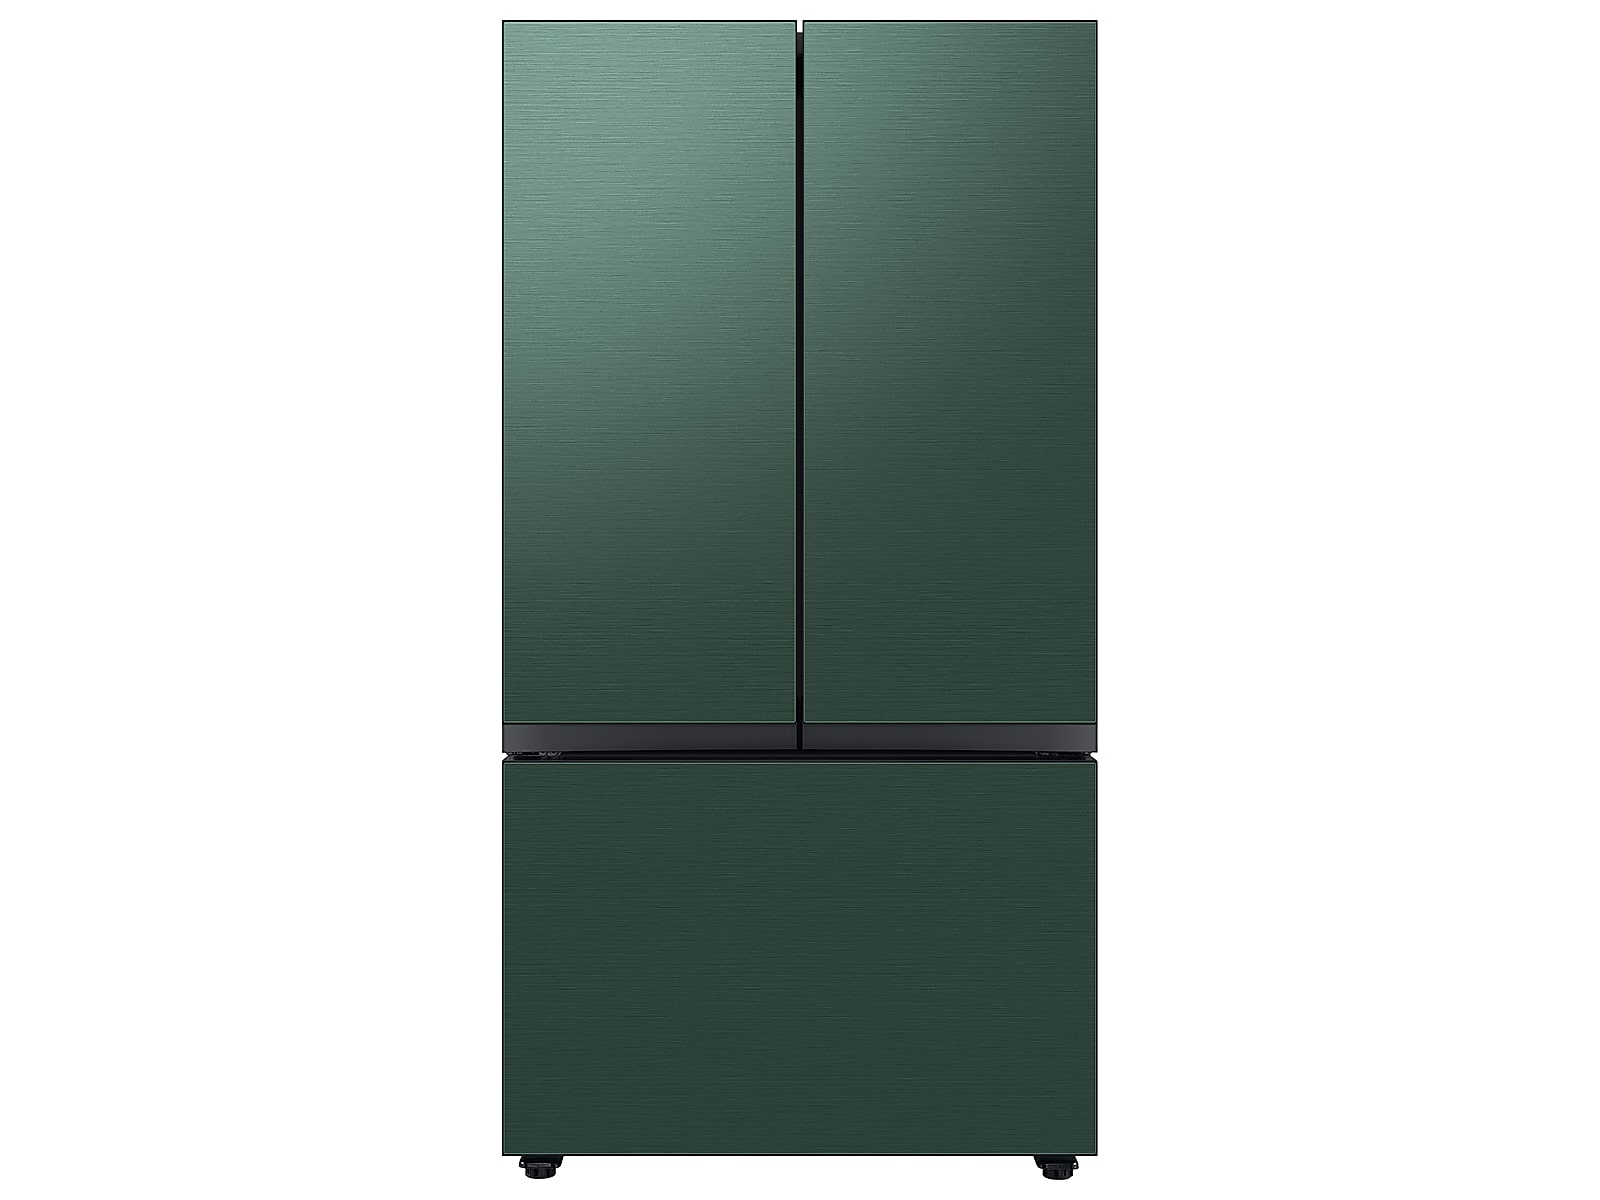 Samsung Bespoke 3-Door French Door Refrigerator in Stainless Steel (30 cu. ft.) with Beverage Center™ in Emerald Green Steel(BNDL-1650311467546)